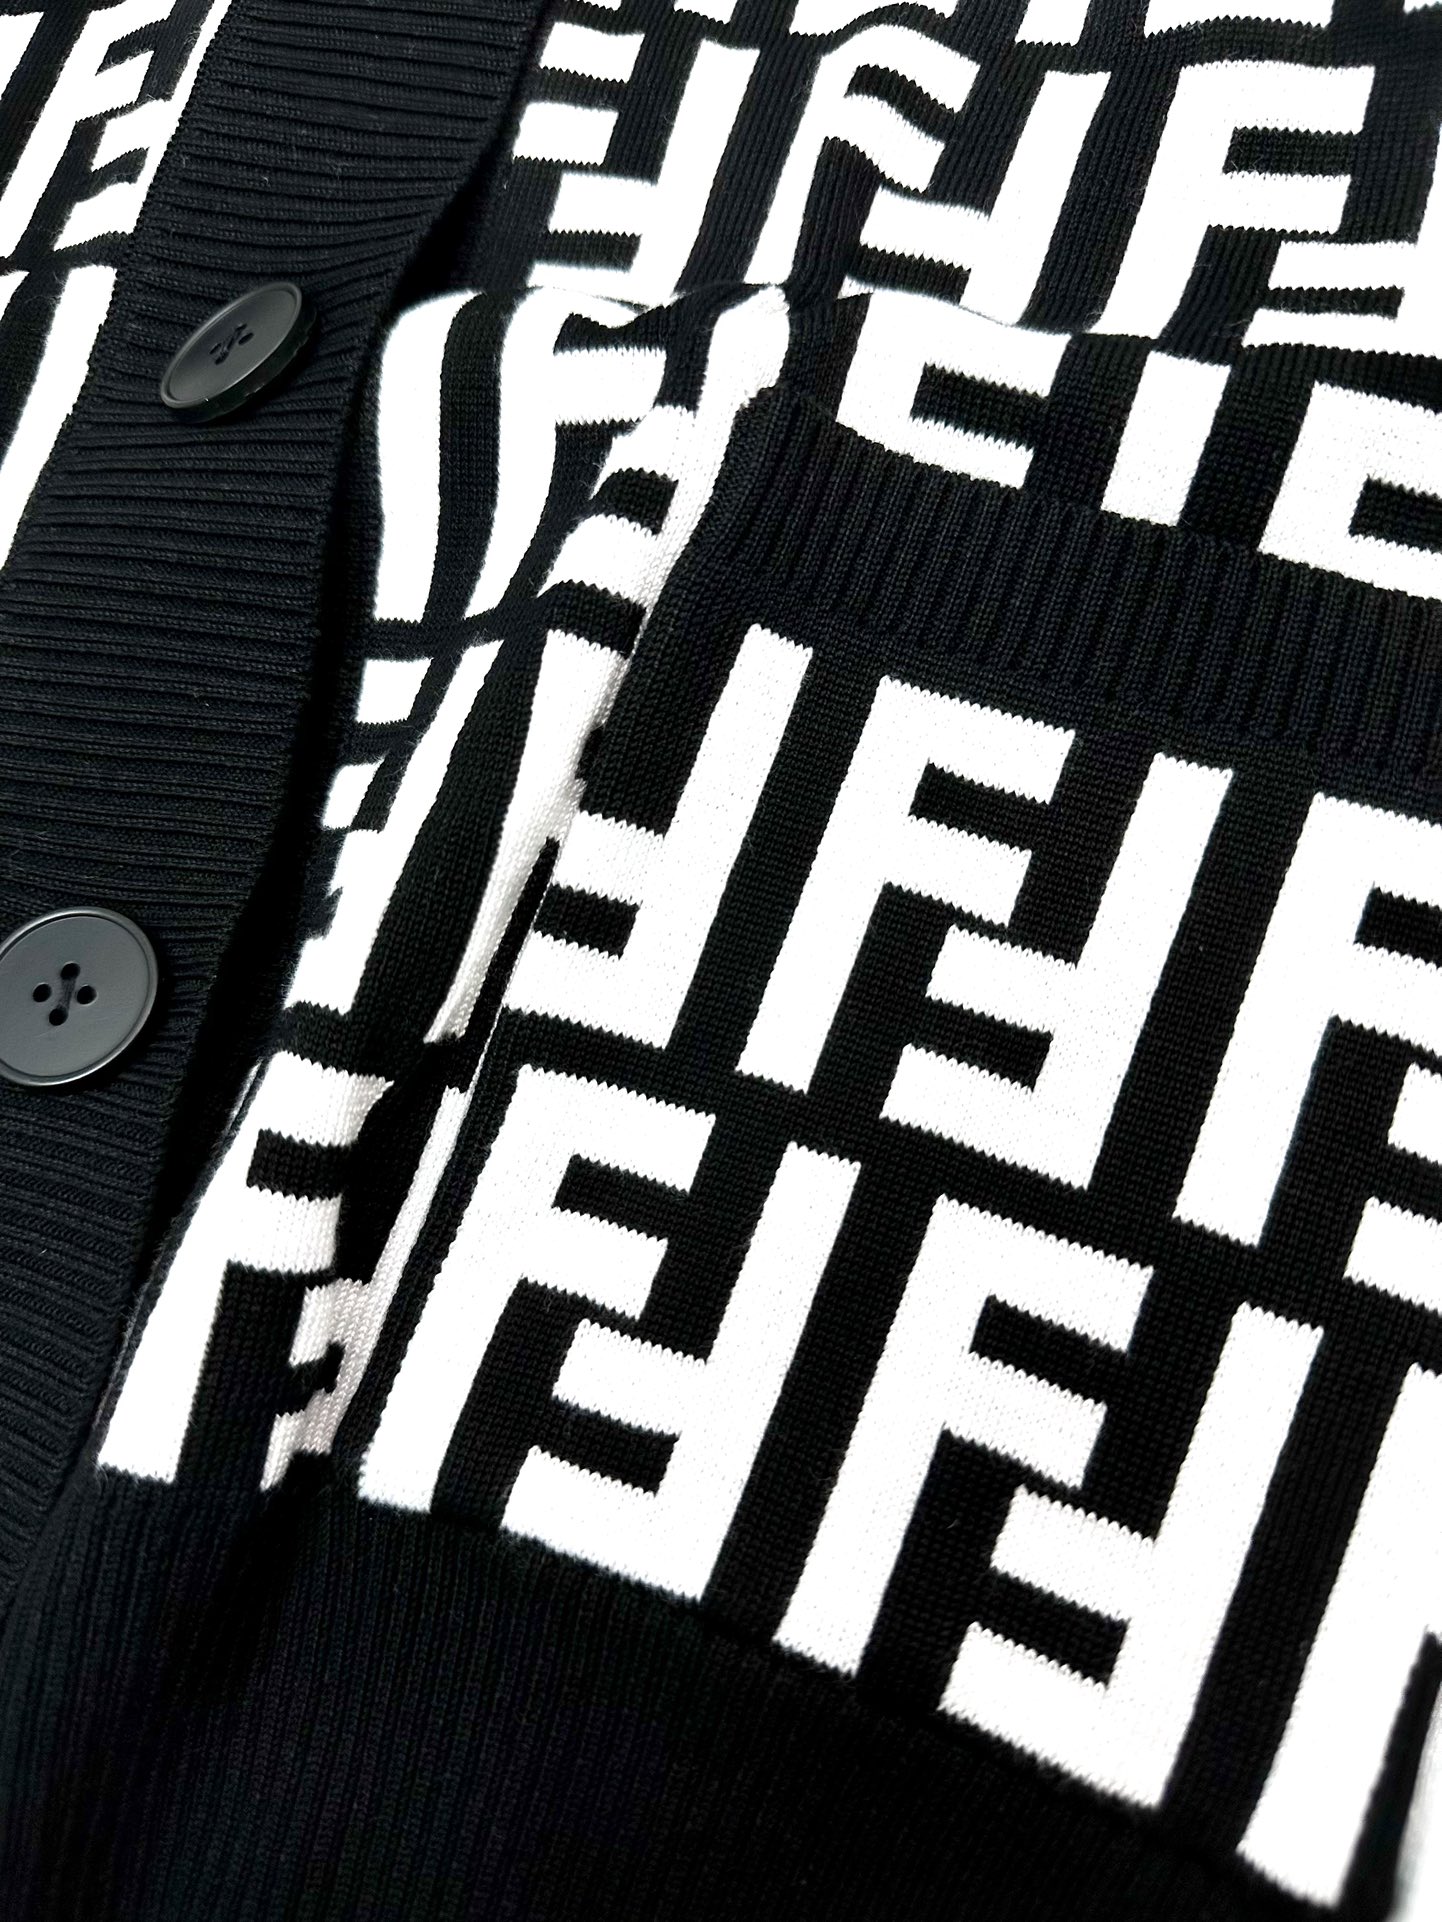 FEND1秋冬新款针织开衫毛衣高端品质专柜版本潮人最爱风格系列撞色拼接设计LOGO图案标志精选优质羊毛混